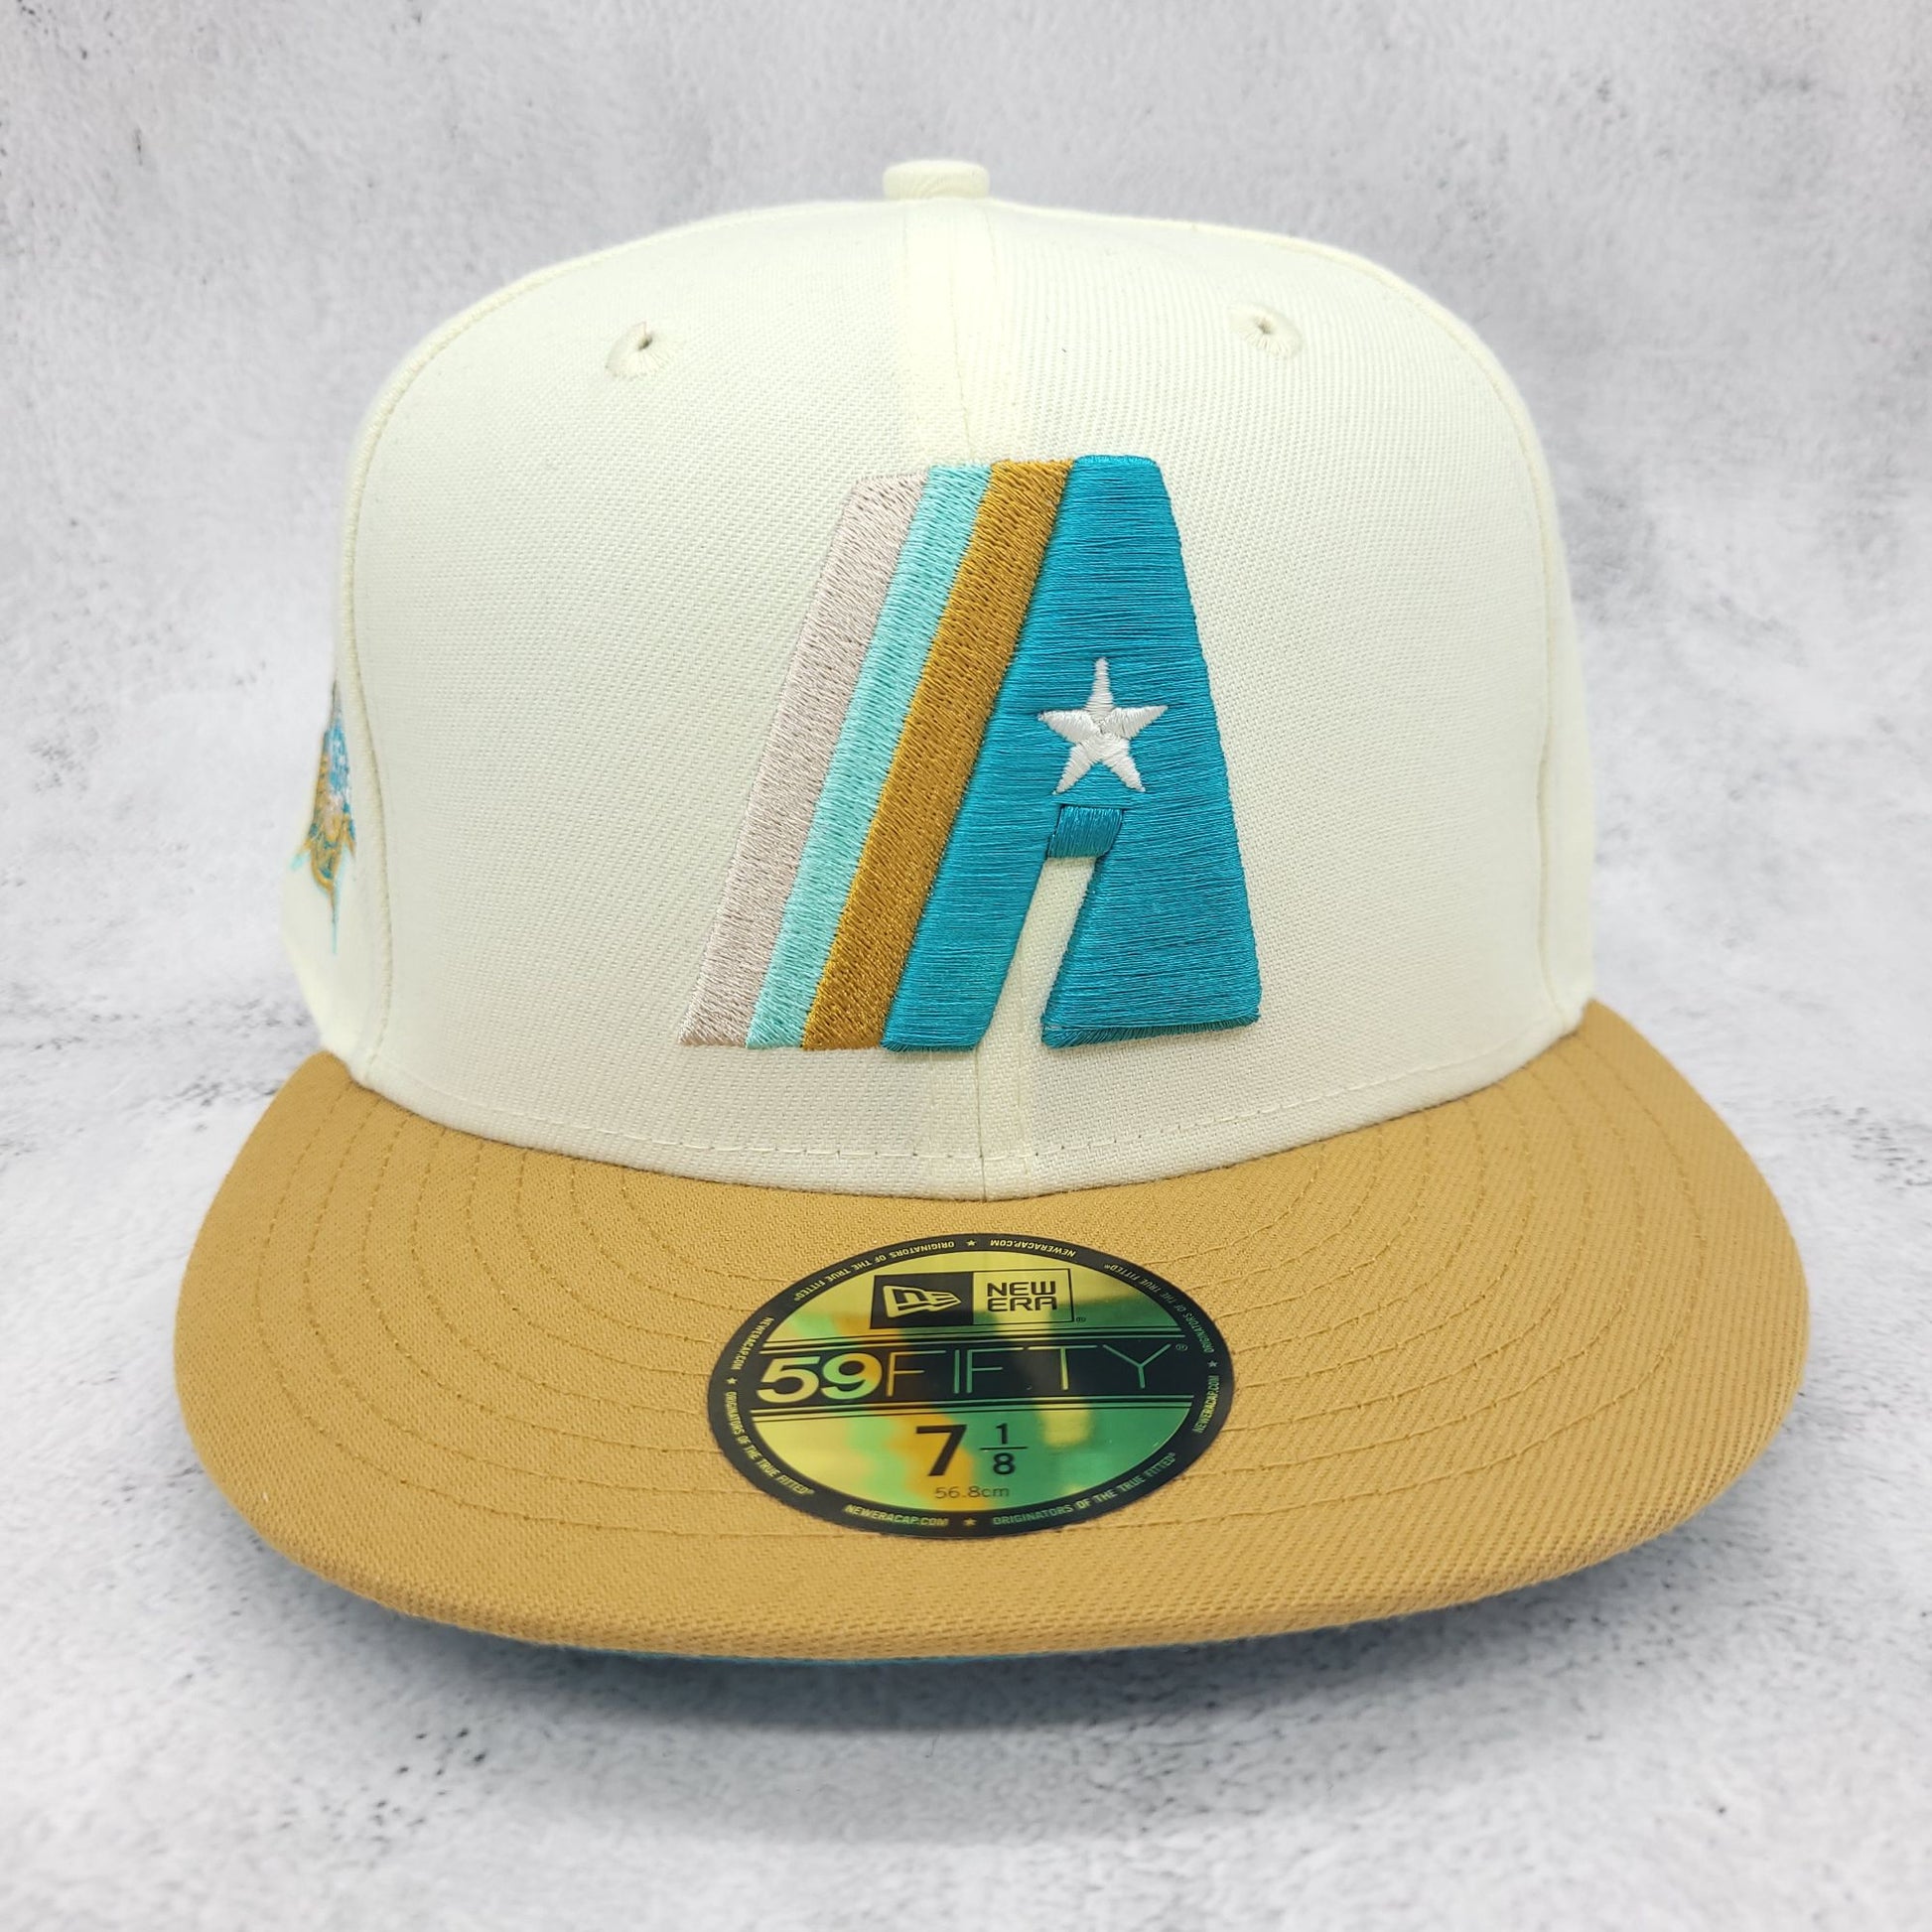 USA Cap King Houston Astros Prototype New Era 59FIFTY Hat